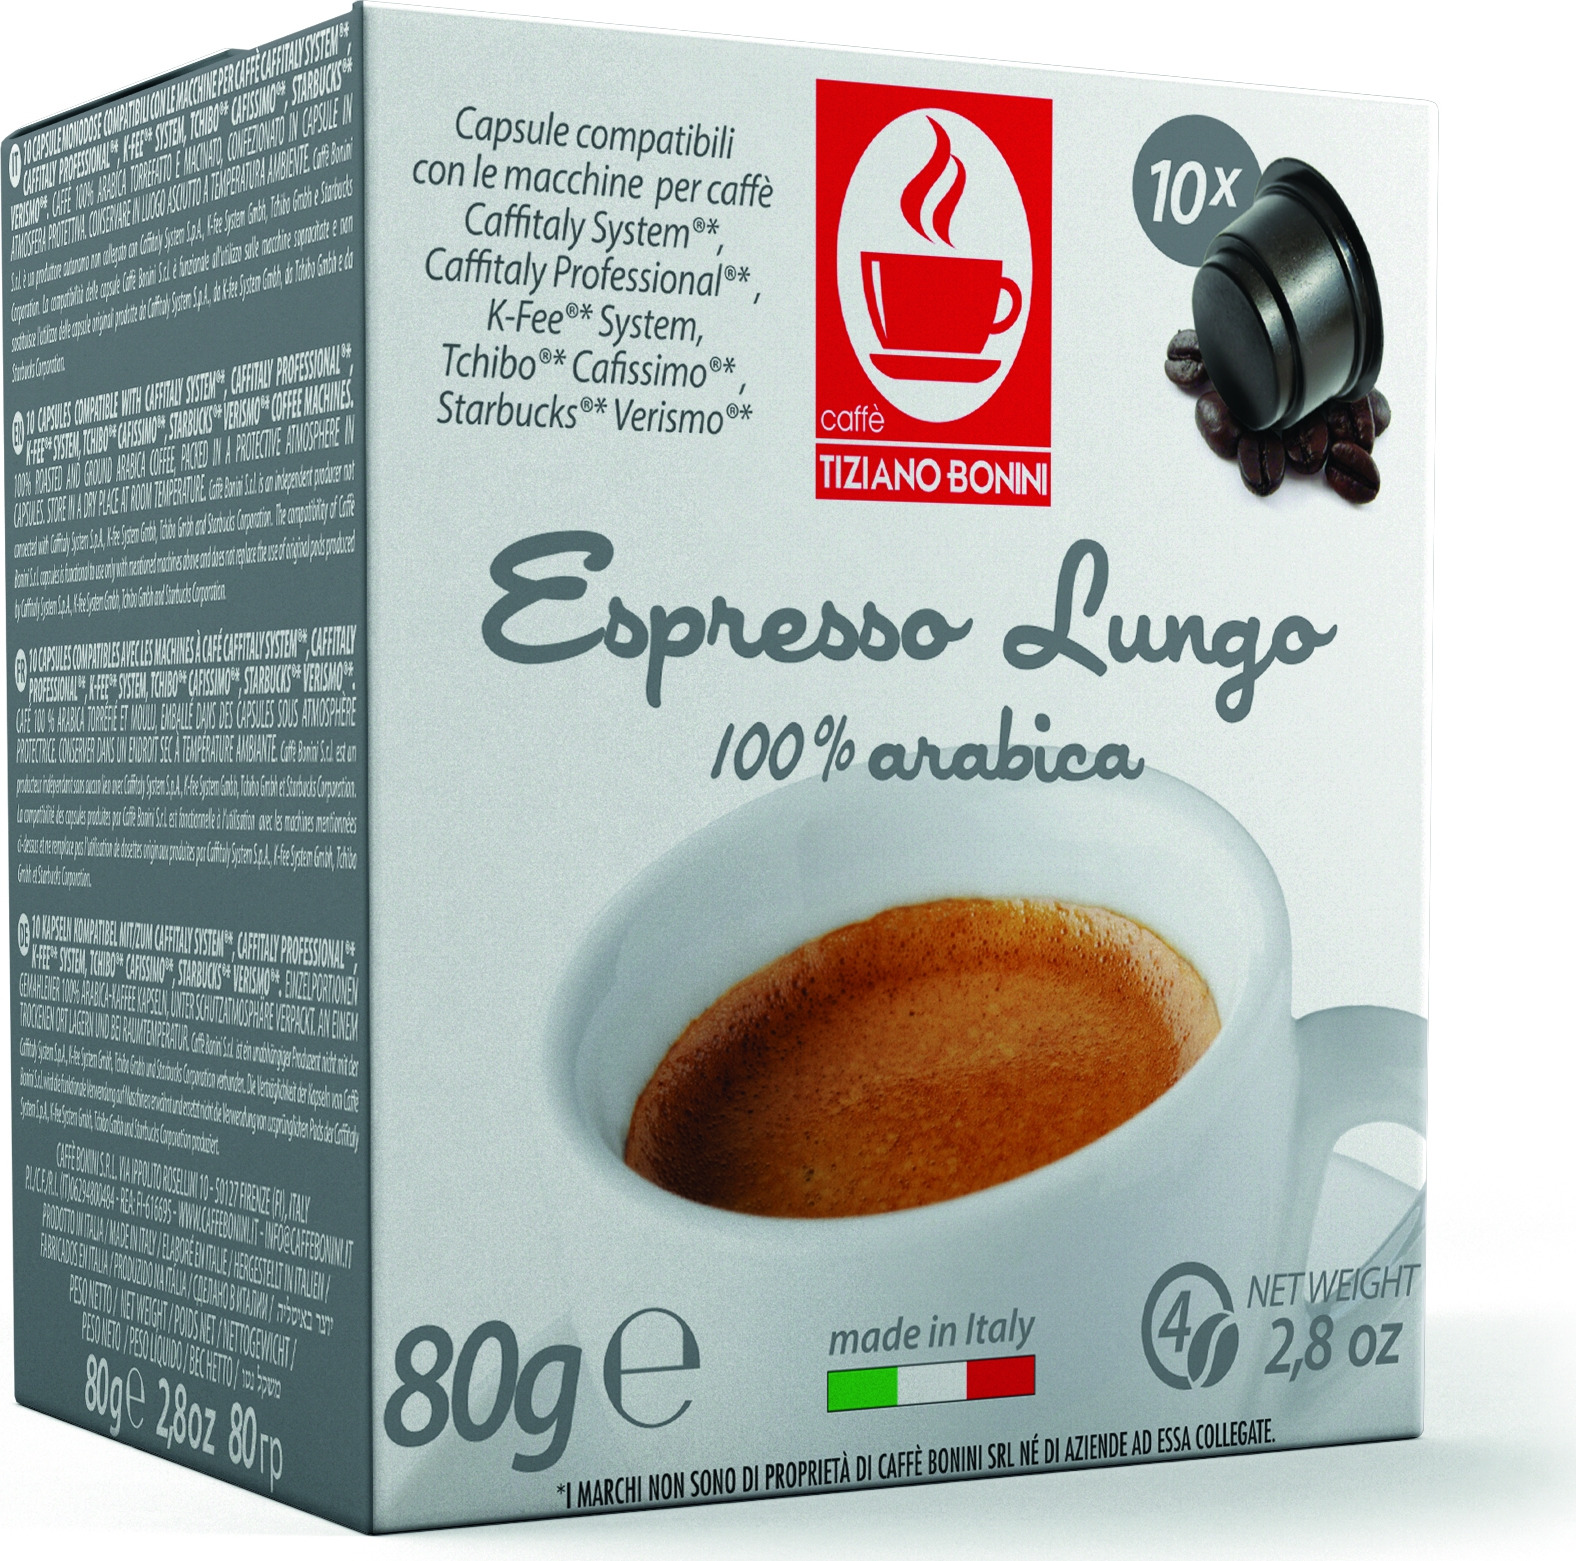 Кофе капсульный Caffe Tiziano Bonini Espresso Lungo, для системы Caffitaly, 10 шт